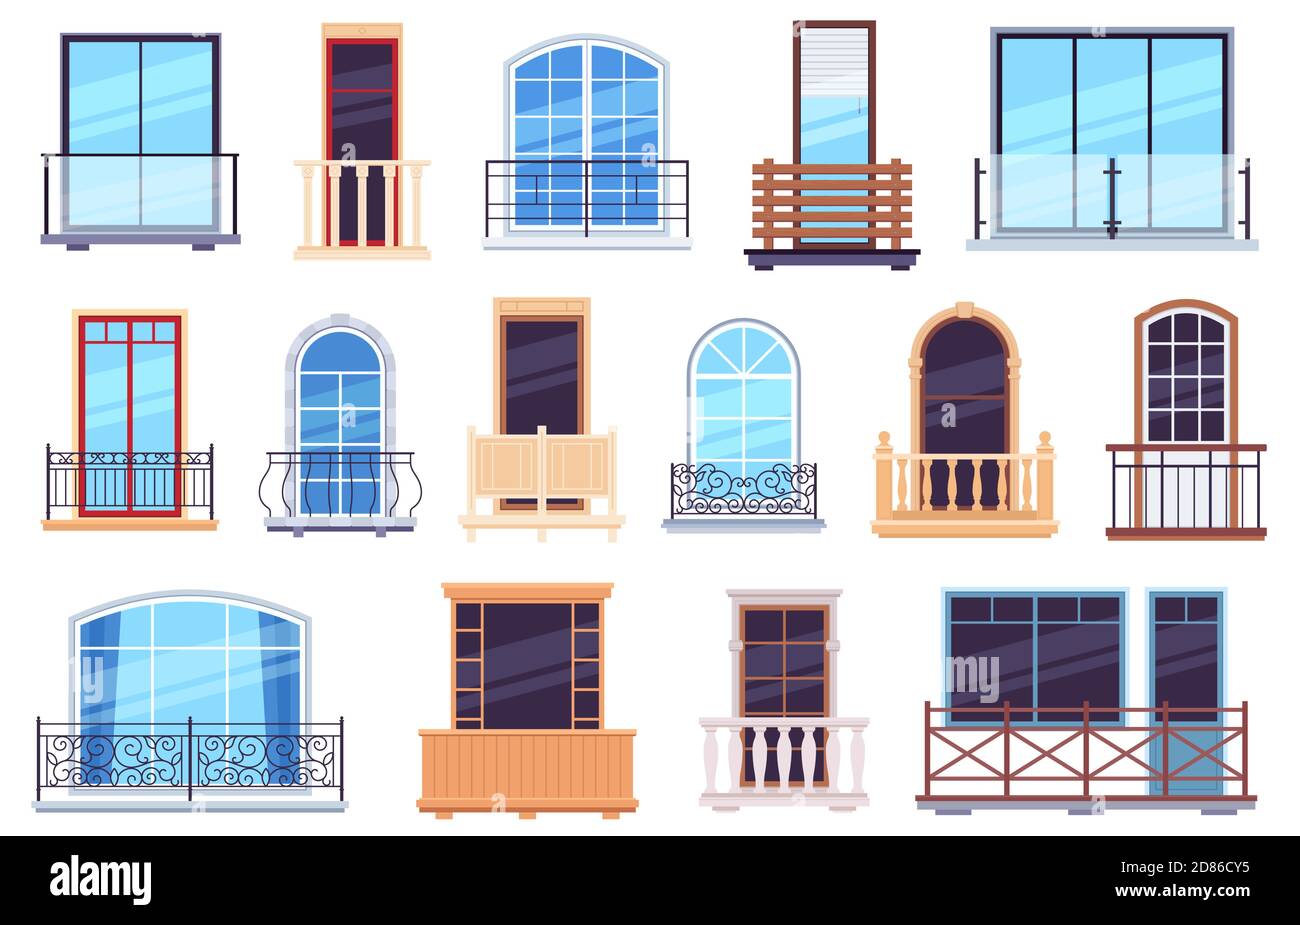 Fenster und Balkone. Architektur Haus Fassadenelemente mit modernen und klassischen Balkontüren, Zargen und Geländer Vektor-Set Stock Vektor